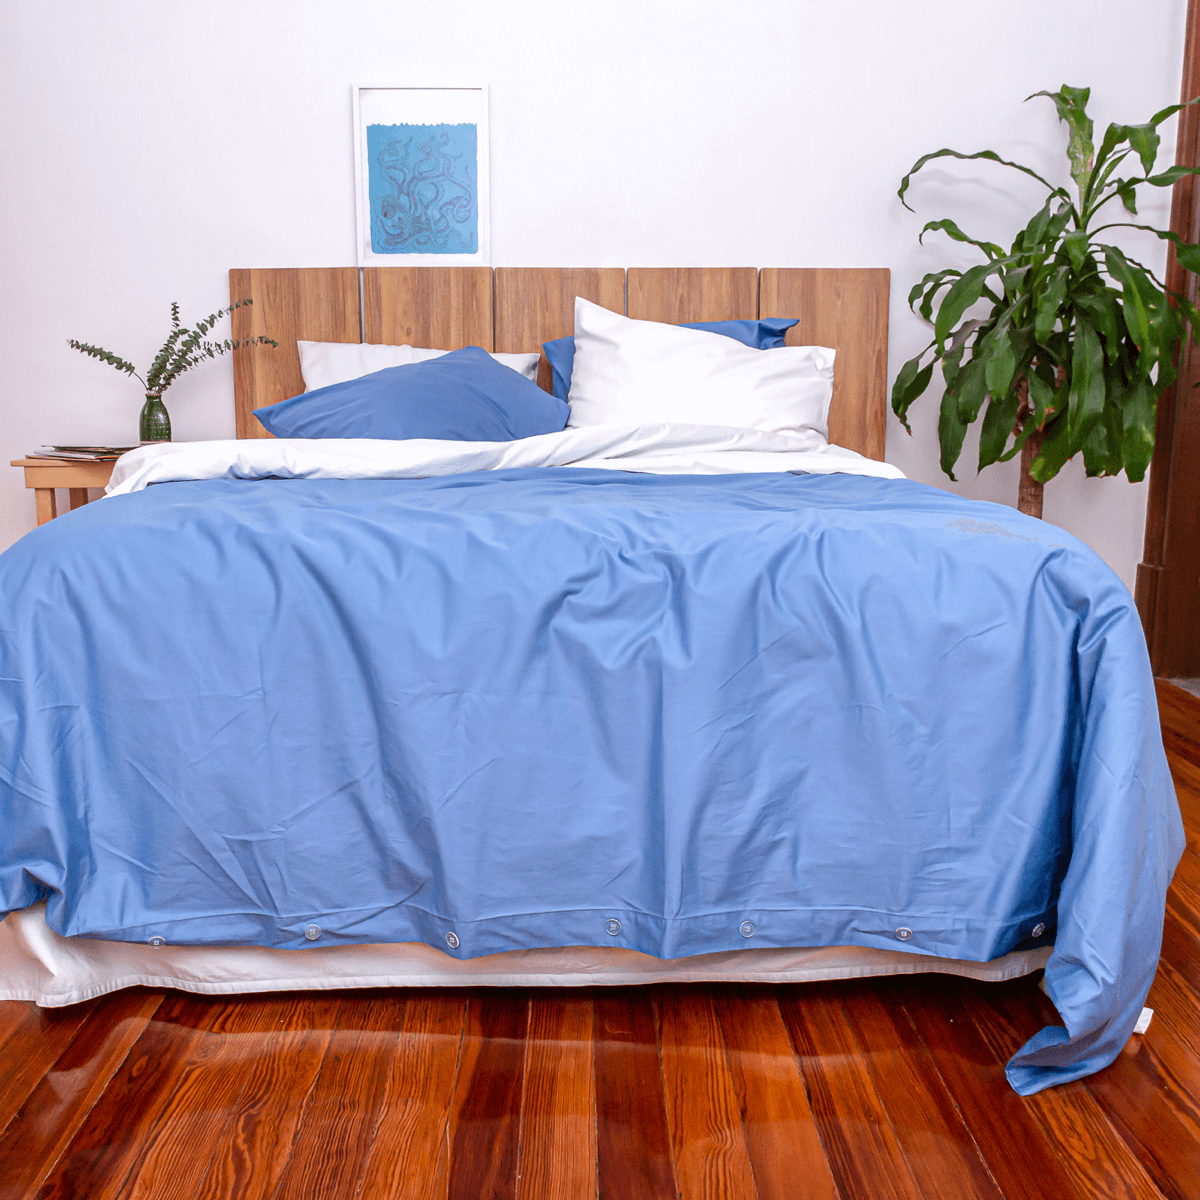 cama con juego completo de sabanas blanco y funda de duvet azul nuit 